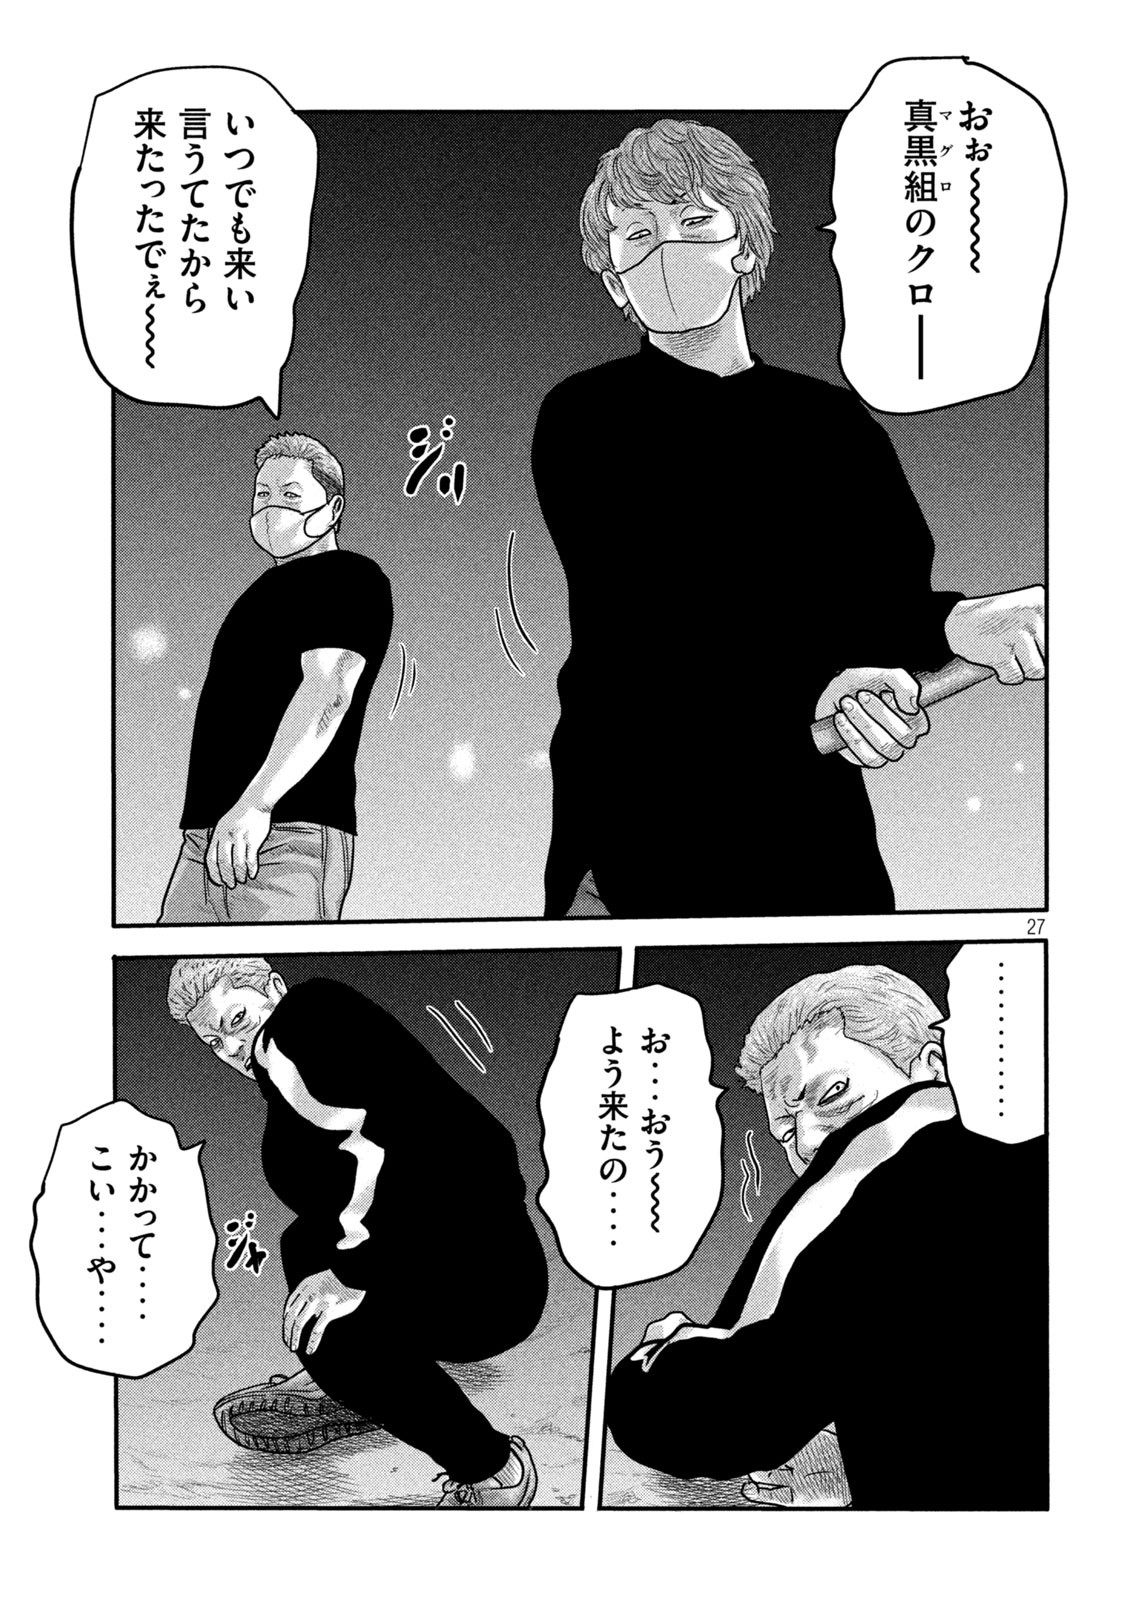 ザ・ファブル The Second Contact 第2話 - Page 27